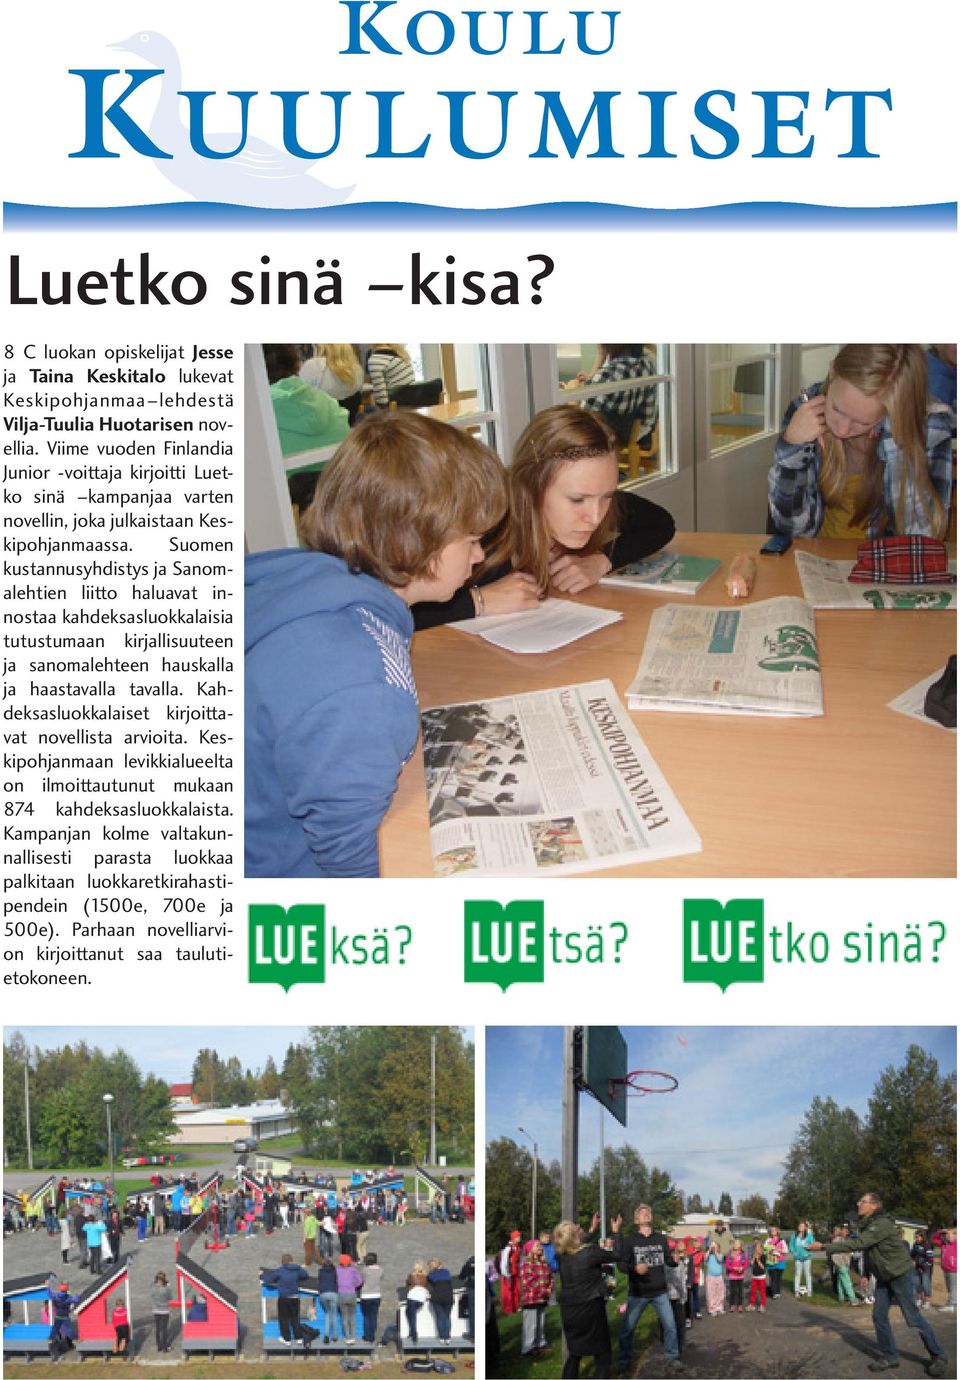 Suomen kustannusyhdistys ja Sanomalehtien liitto haluavat innostaa kahdeksasluokkalaisia tutustumaan kirjallisuuteen ja sanomalehteen hauskalla ja haastavalla tavalla.